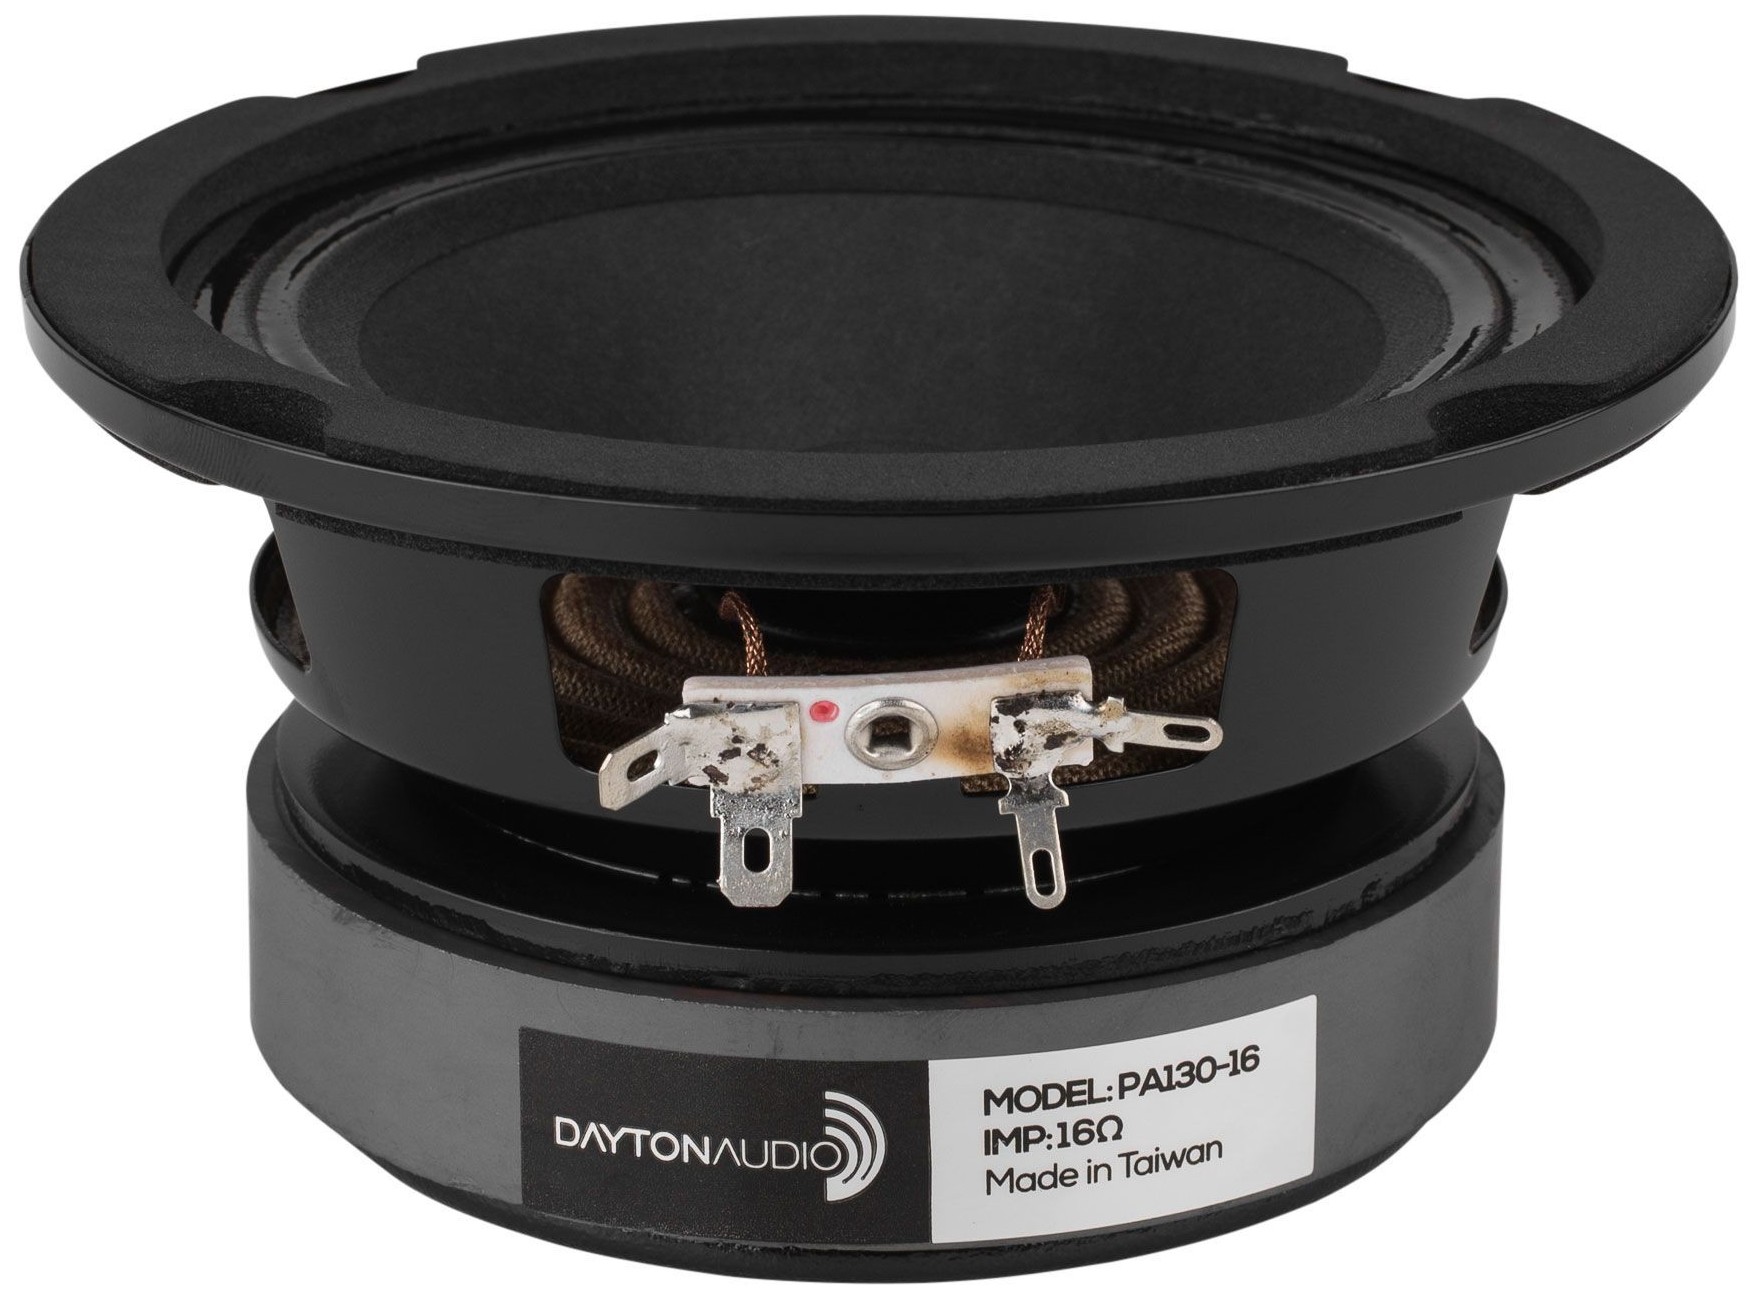 Dayton Audio PA130-16 Full-range